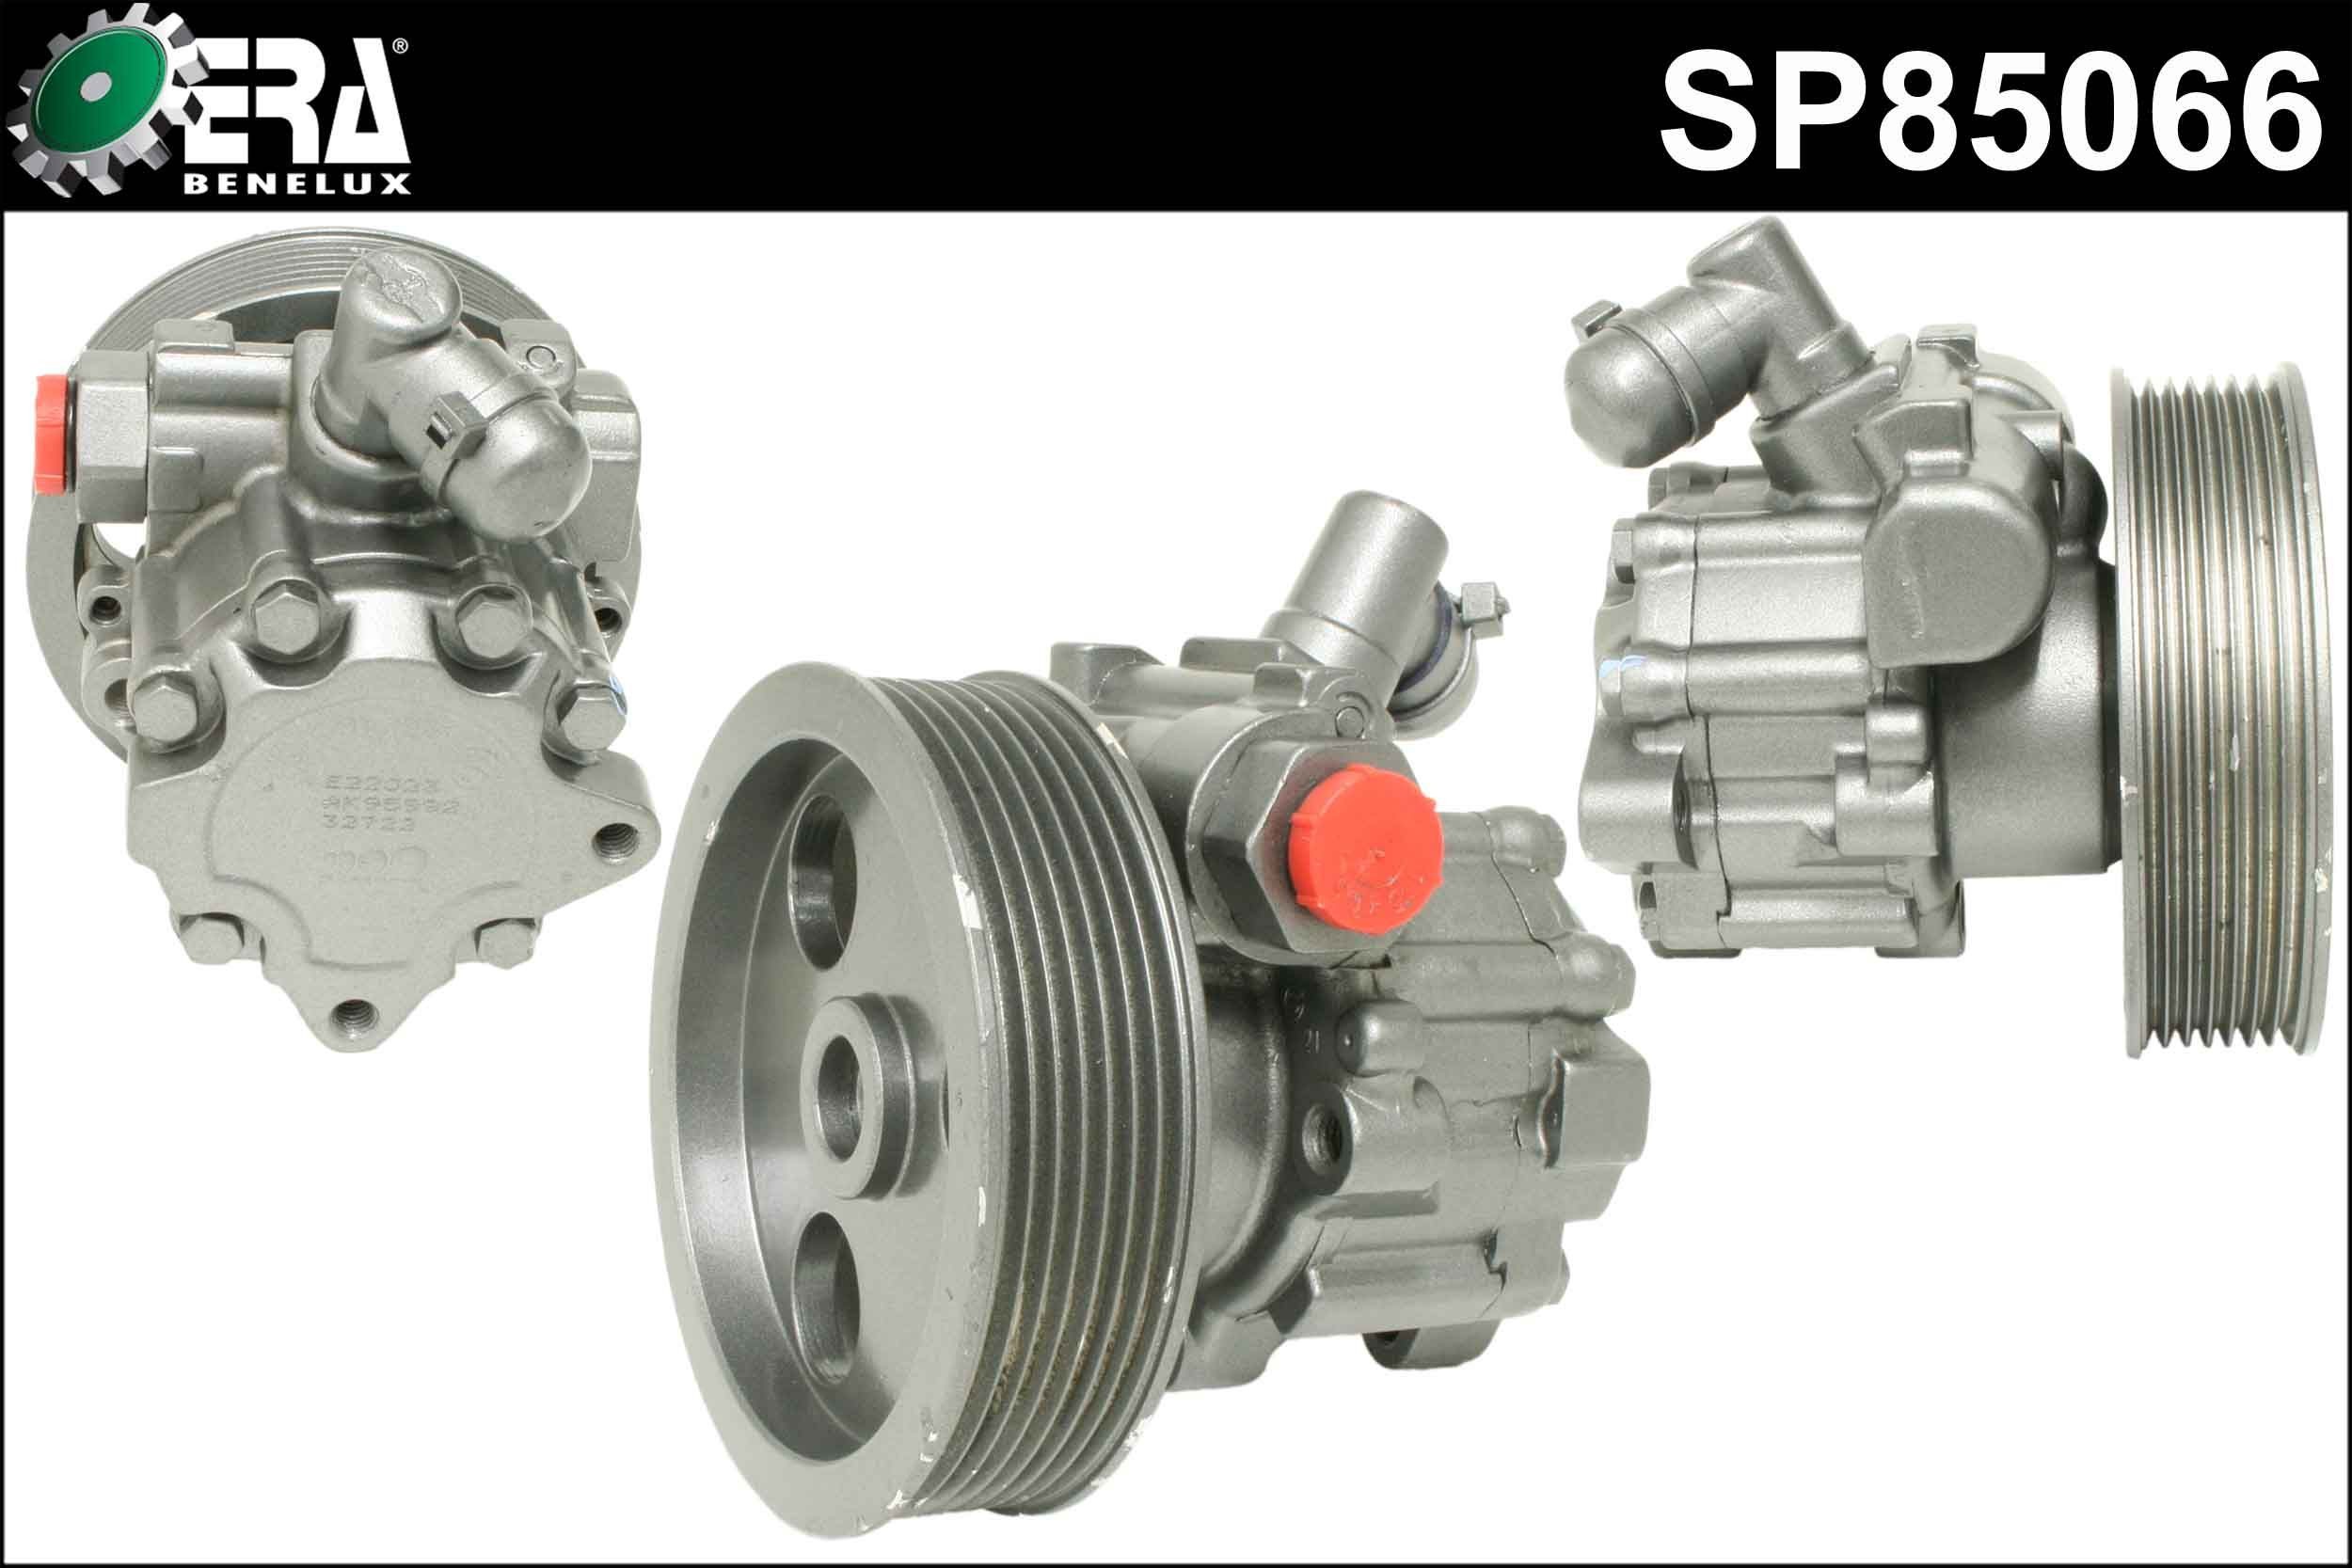 Great value for money - ERA Benelux Power steering pump SP85066